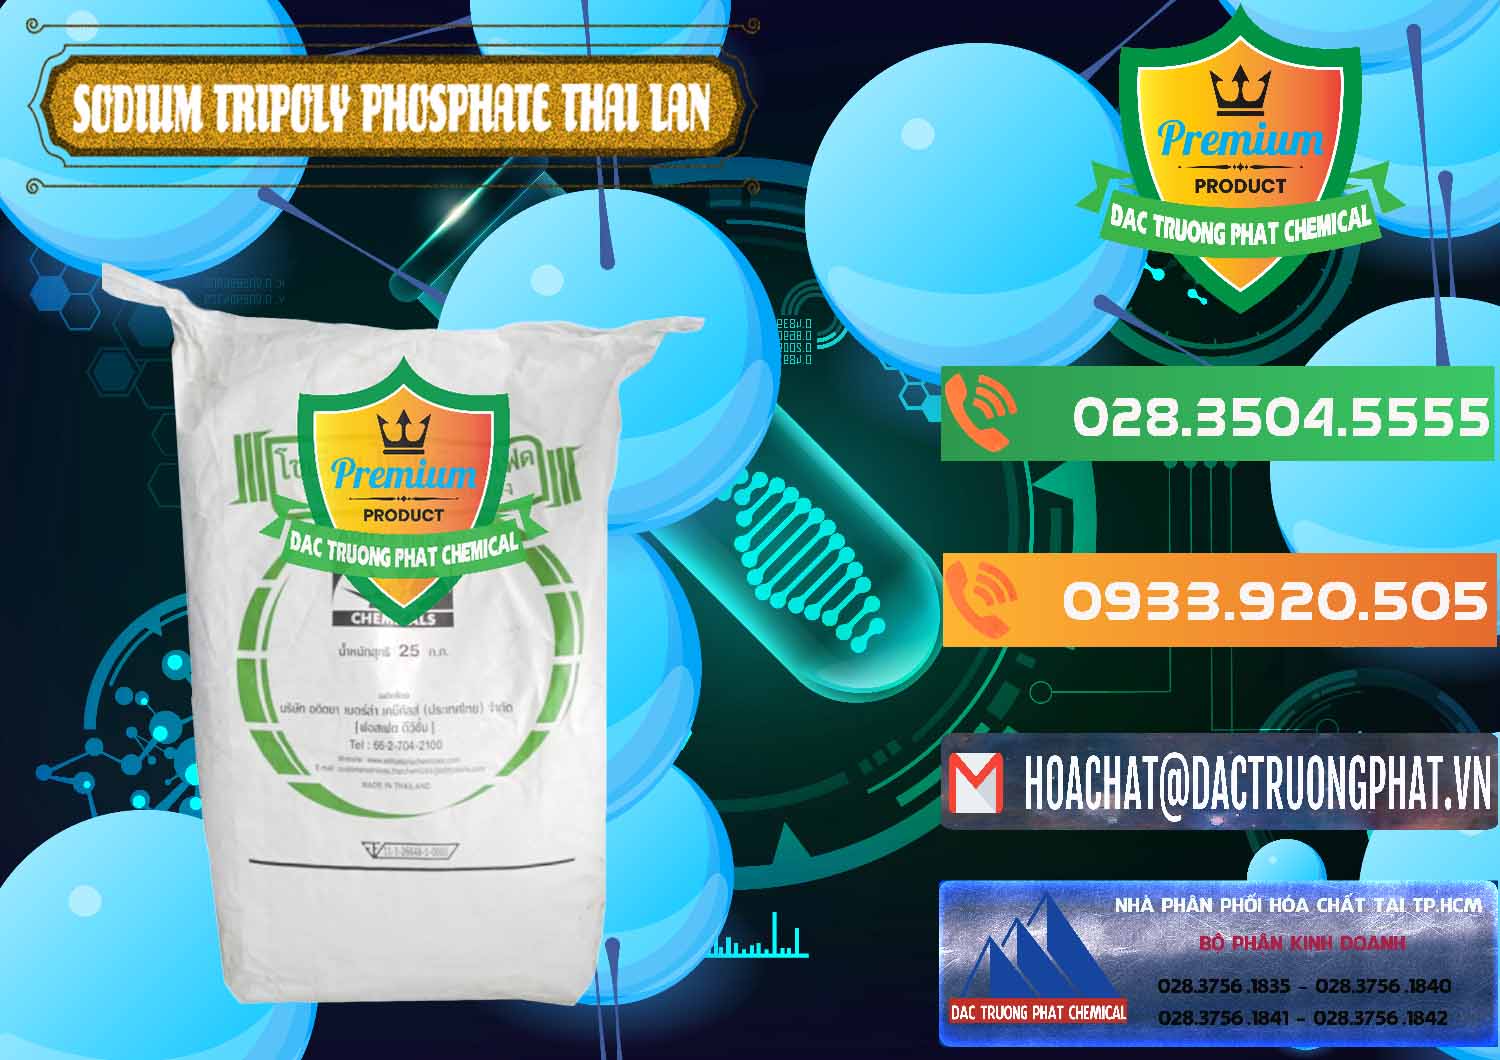 Chuyên kinh doanh _ bán Sodium Tripoly Phosphate - STPP Aditya Birla Grasim Thái Lan Thailand - 0421 - Chuyên cung cấp & kinh doanh hóa chất tại TP.HCM - hoachatxulynuoc.com.vn